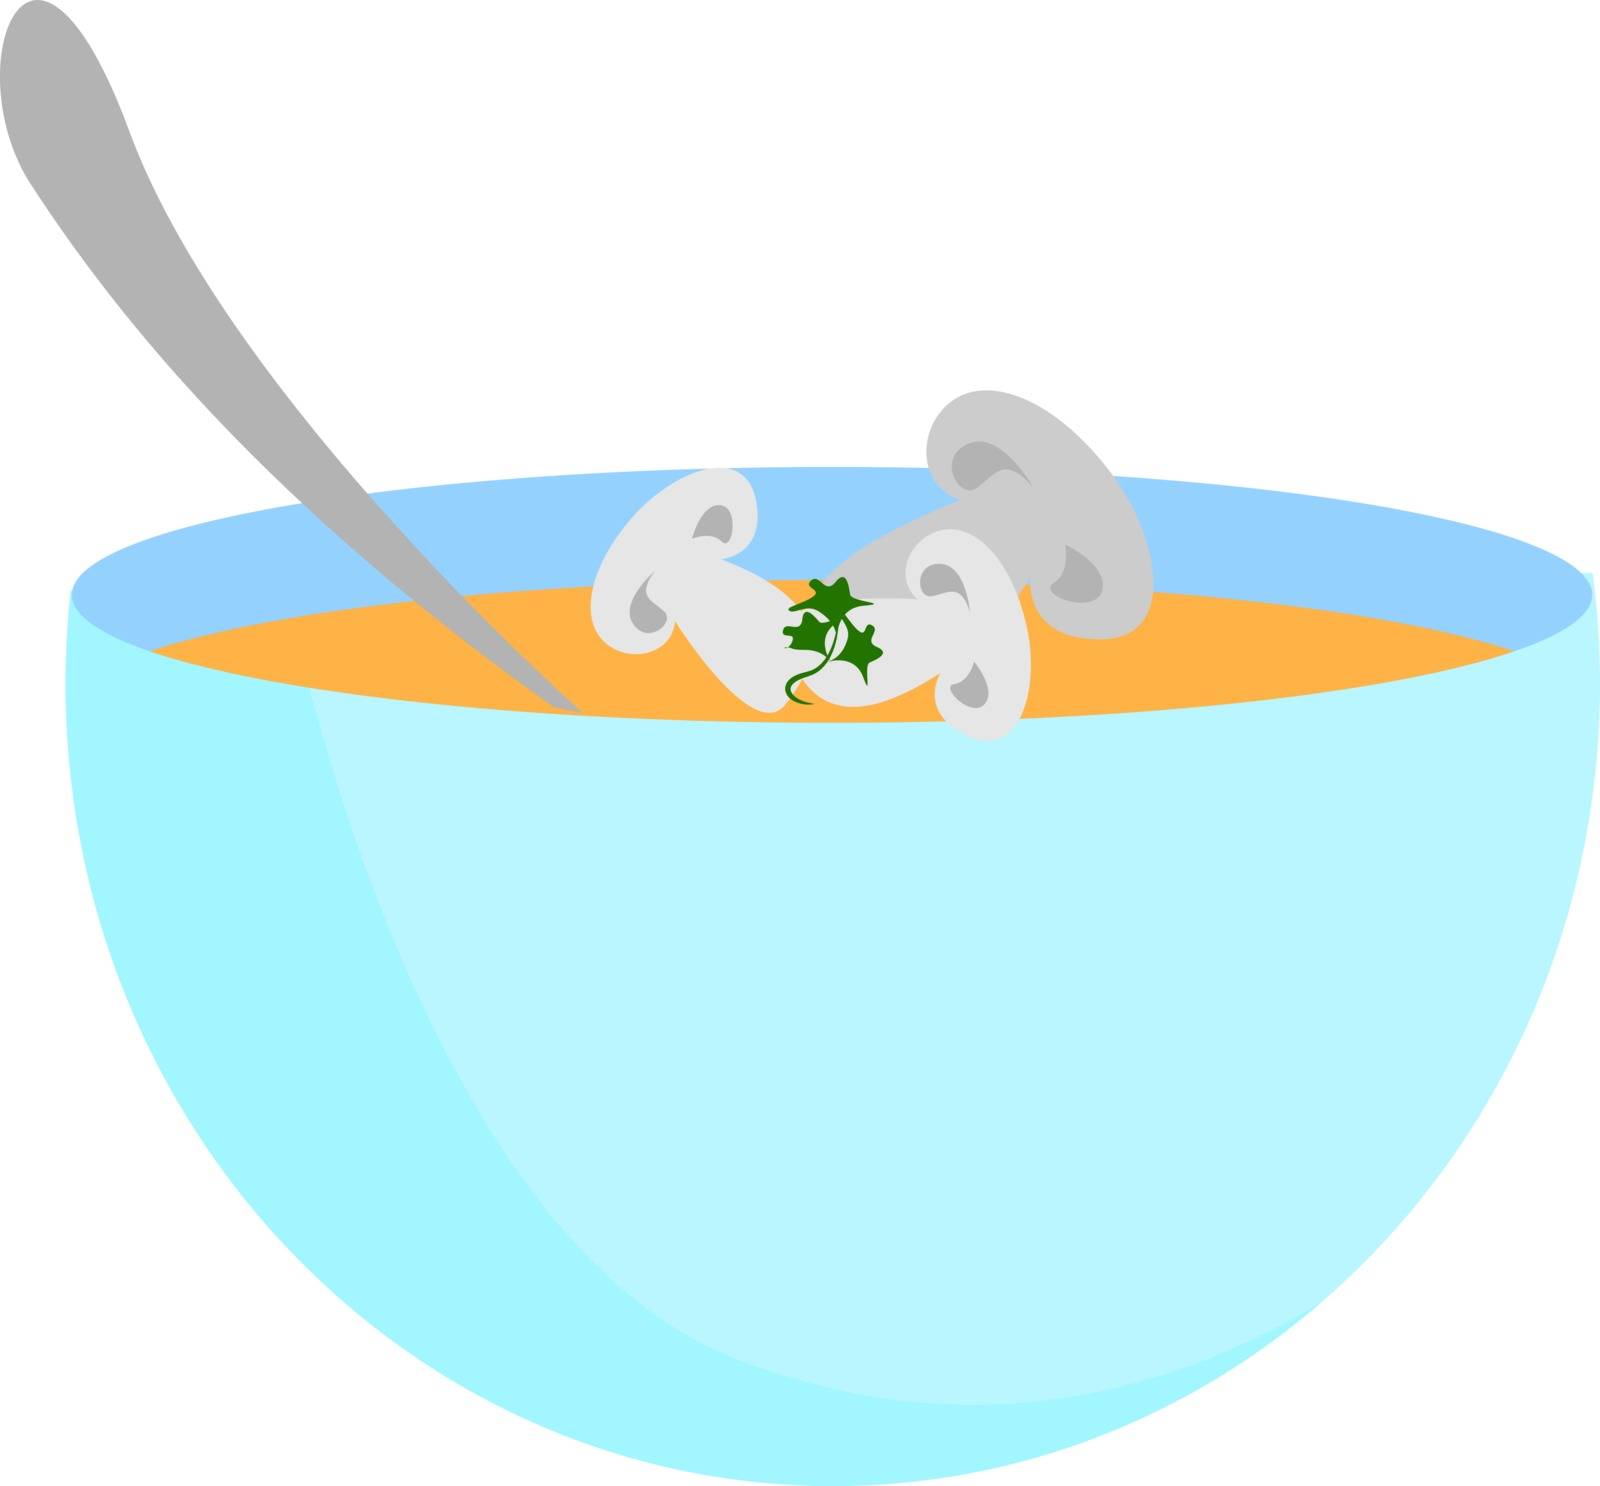 Mushroom in bowl, illustration, vector on white background.